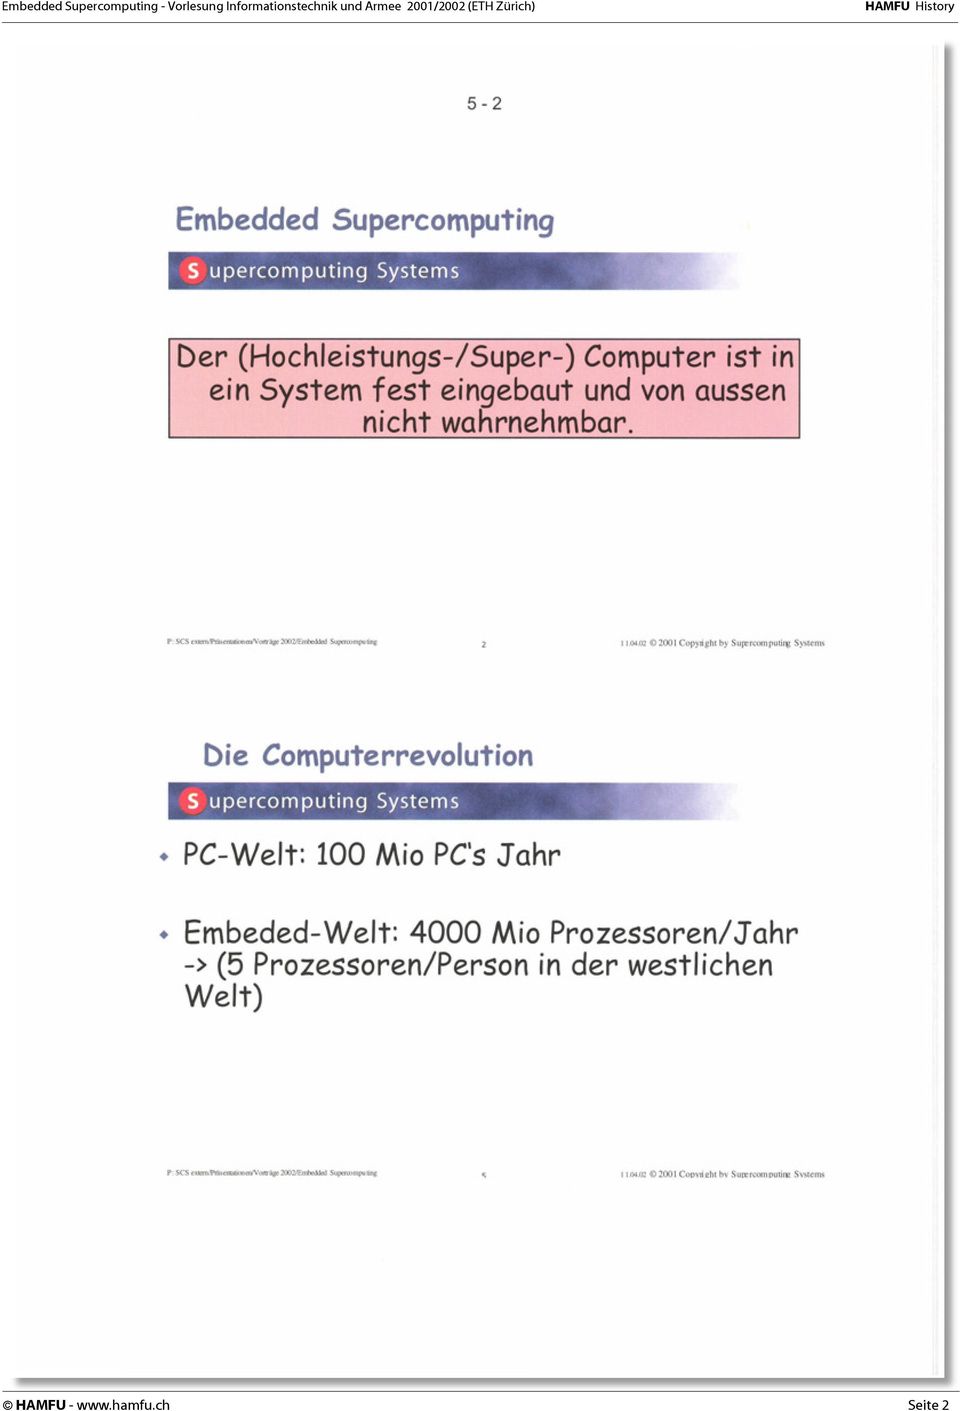 02 2001 Copyright by Supercomputing Systems Die Computerrevolution PC-Welt: 100 Mio PC's Jahr Embeded-Welt: 4000 Mio